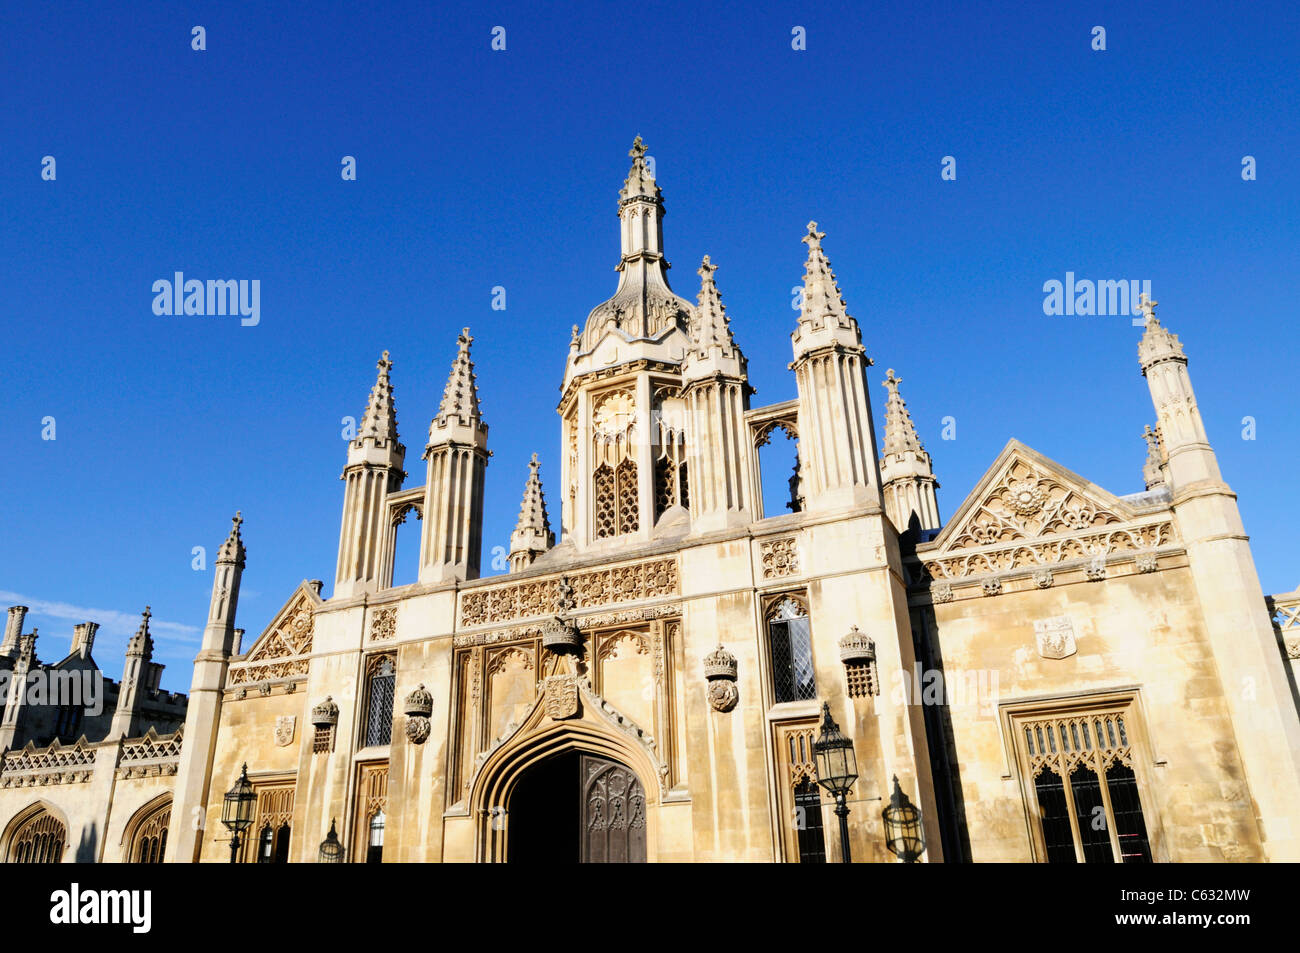 King's College Gatehouse, Cambridge, England, UK Stock Photo